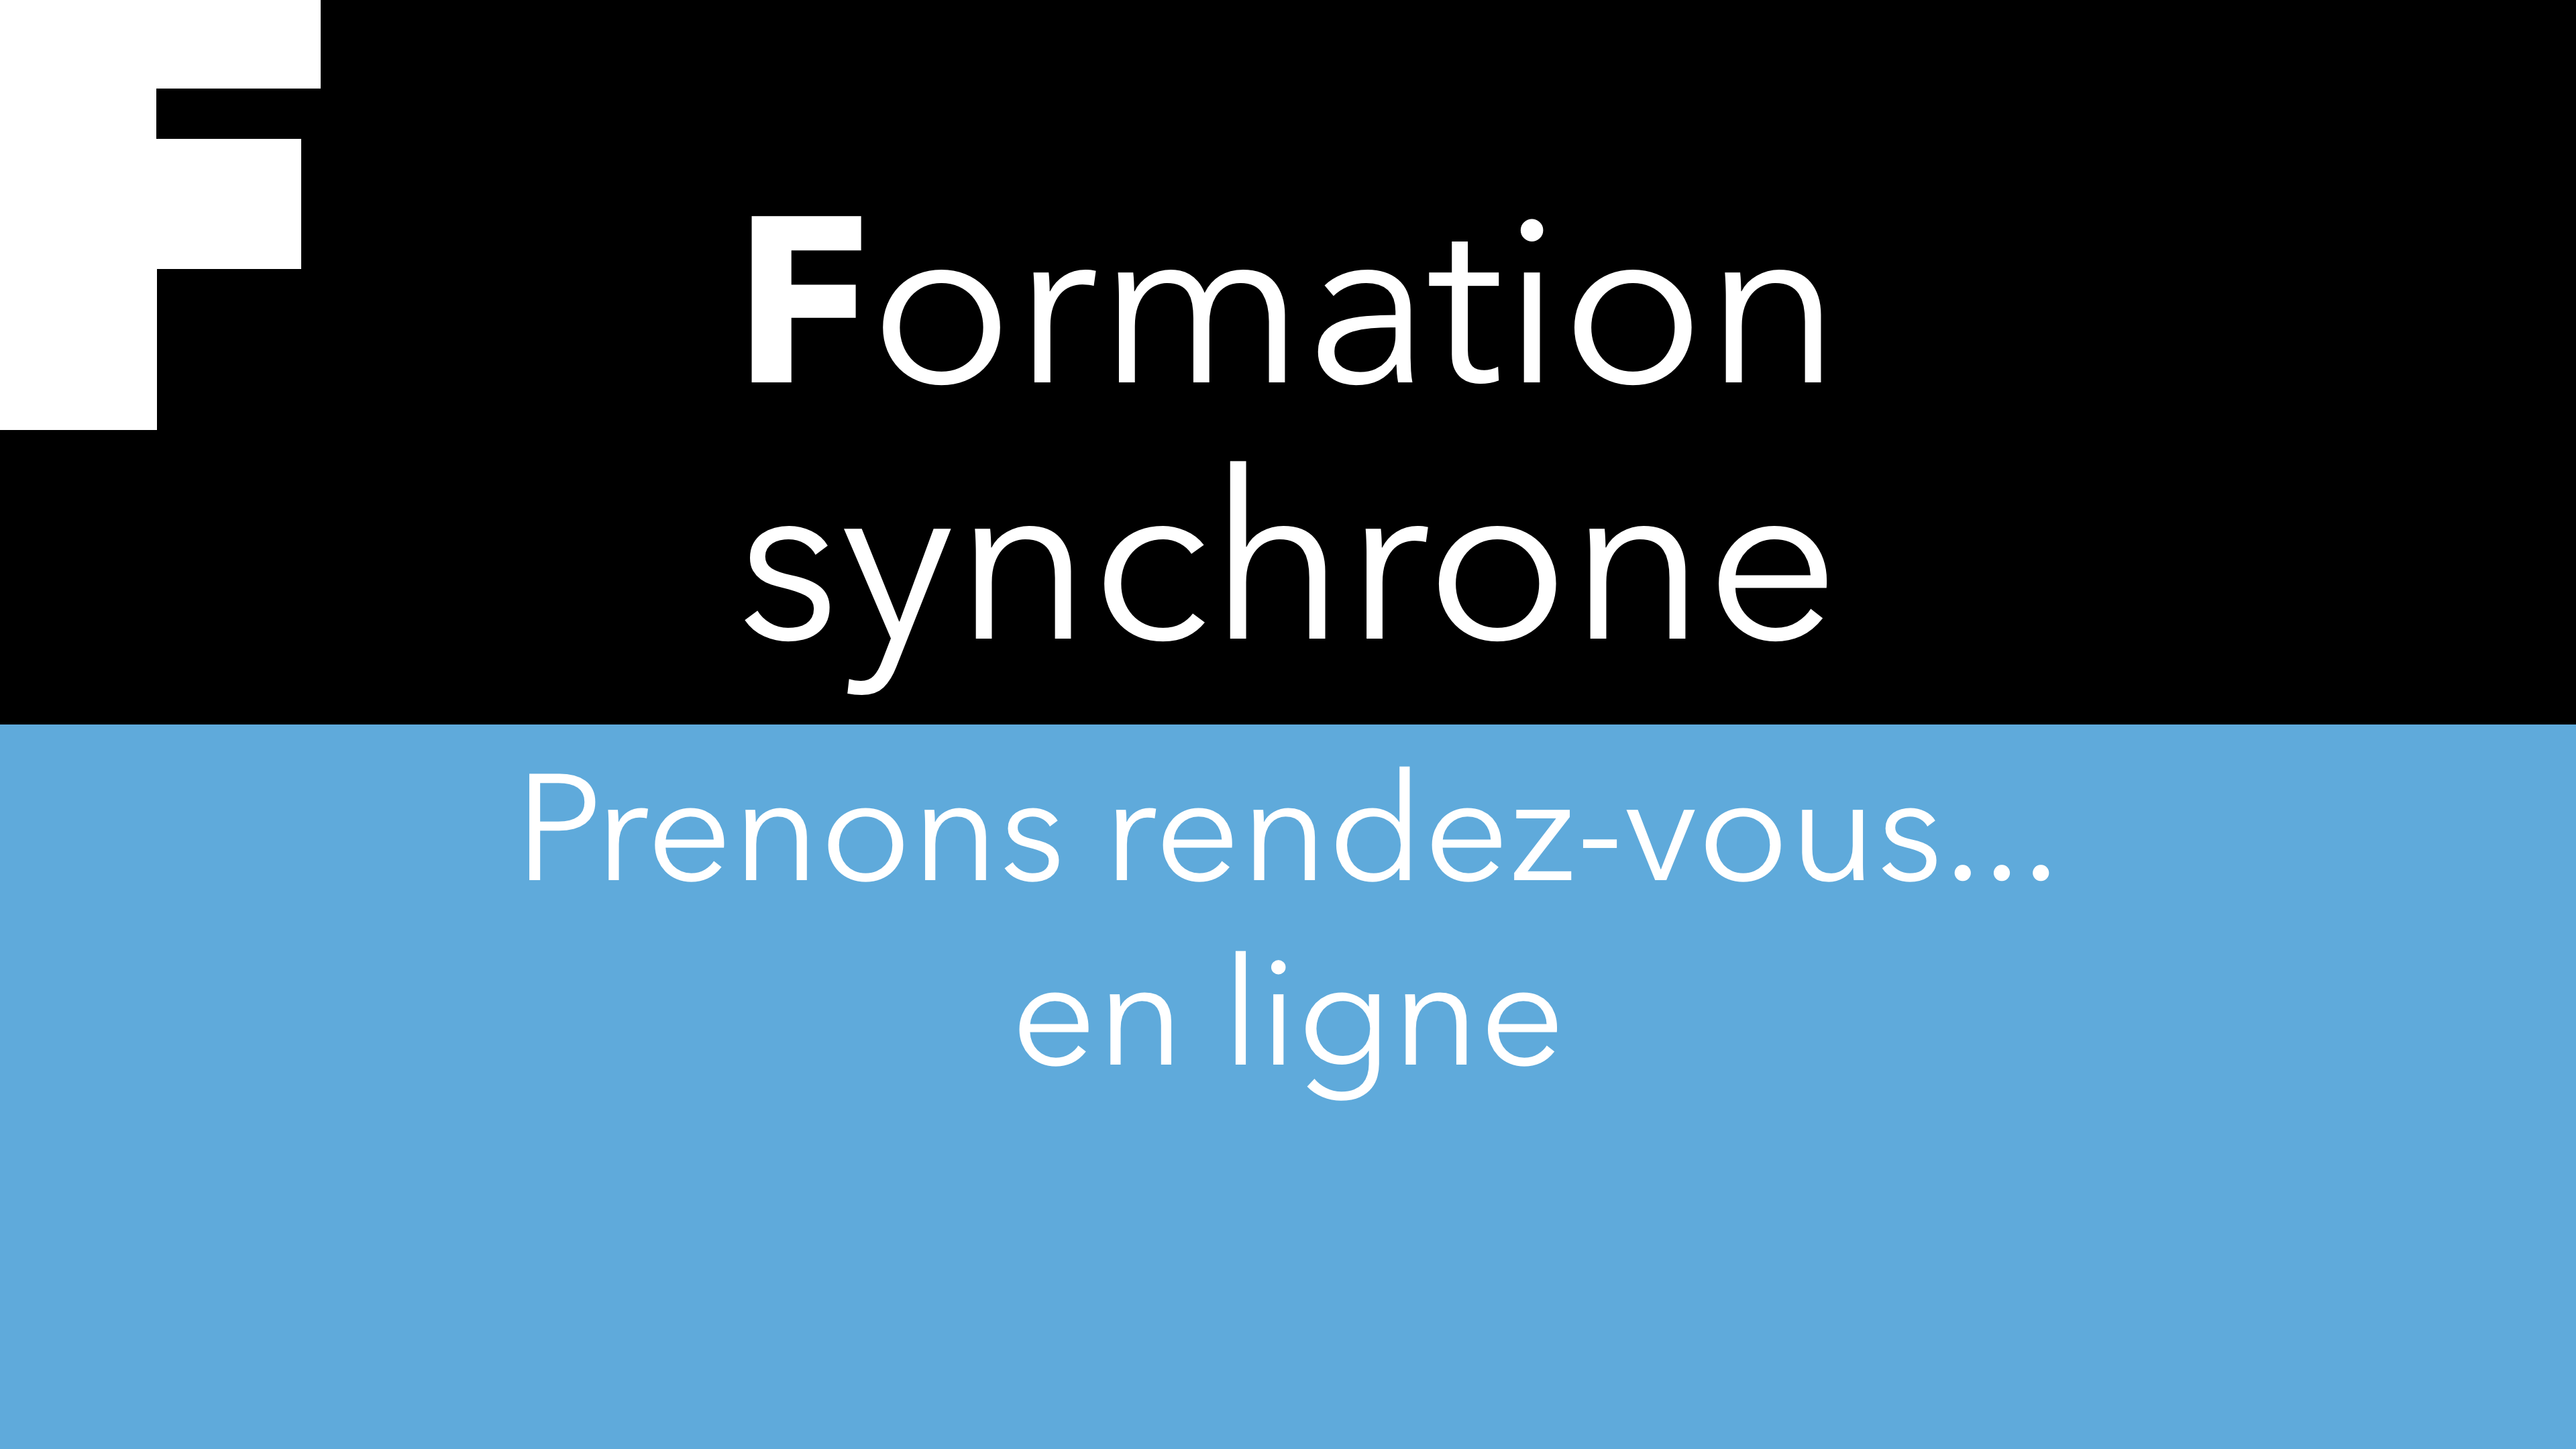 F – Formation synchrone